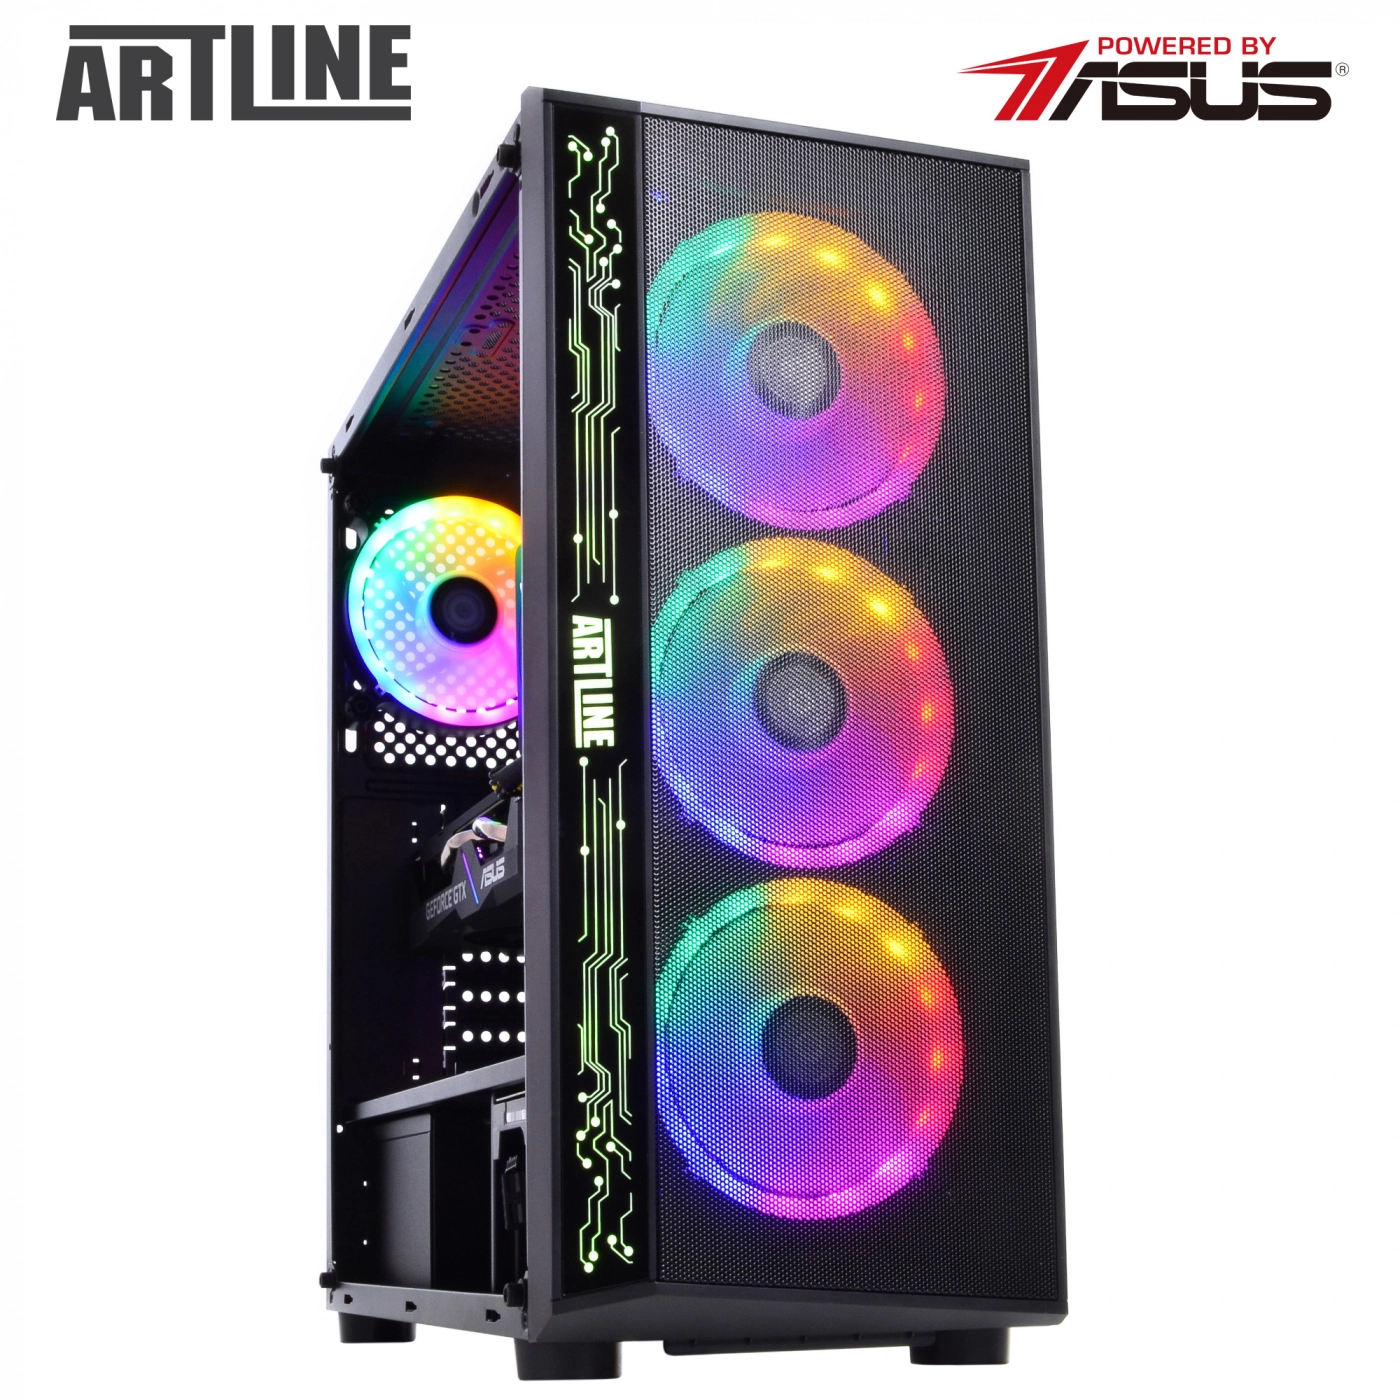 Купить Компьютер ARTLINE Gaming X43v09 - фото 10